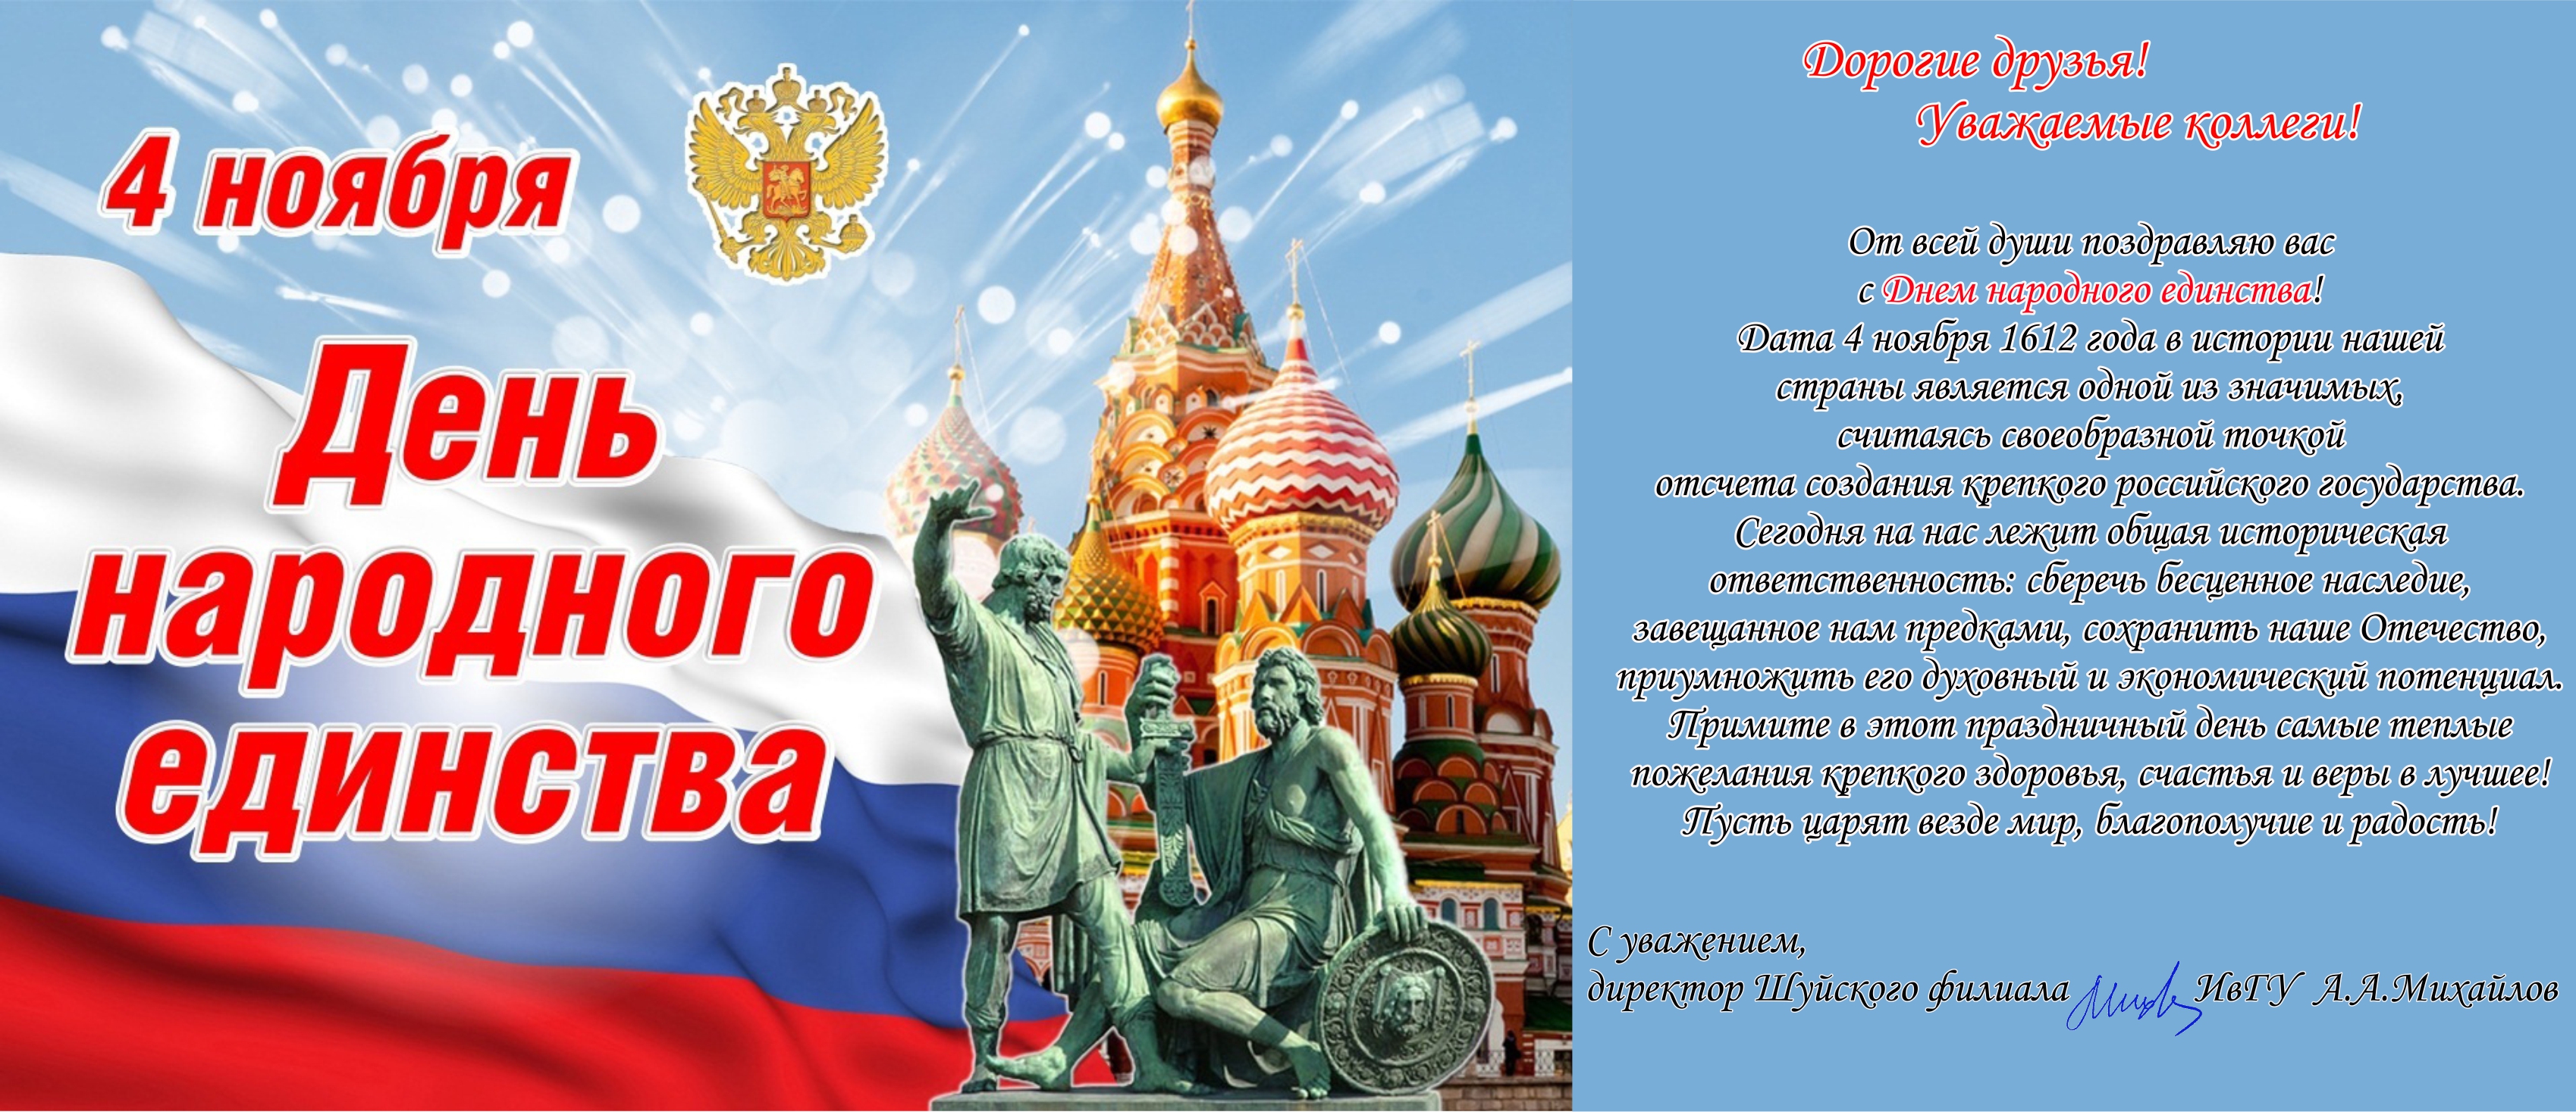 Открытка с днем народного единства в России